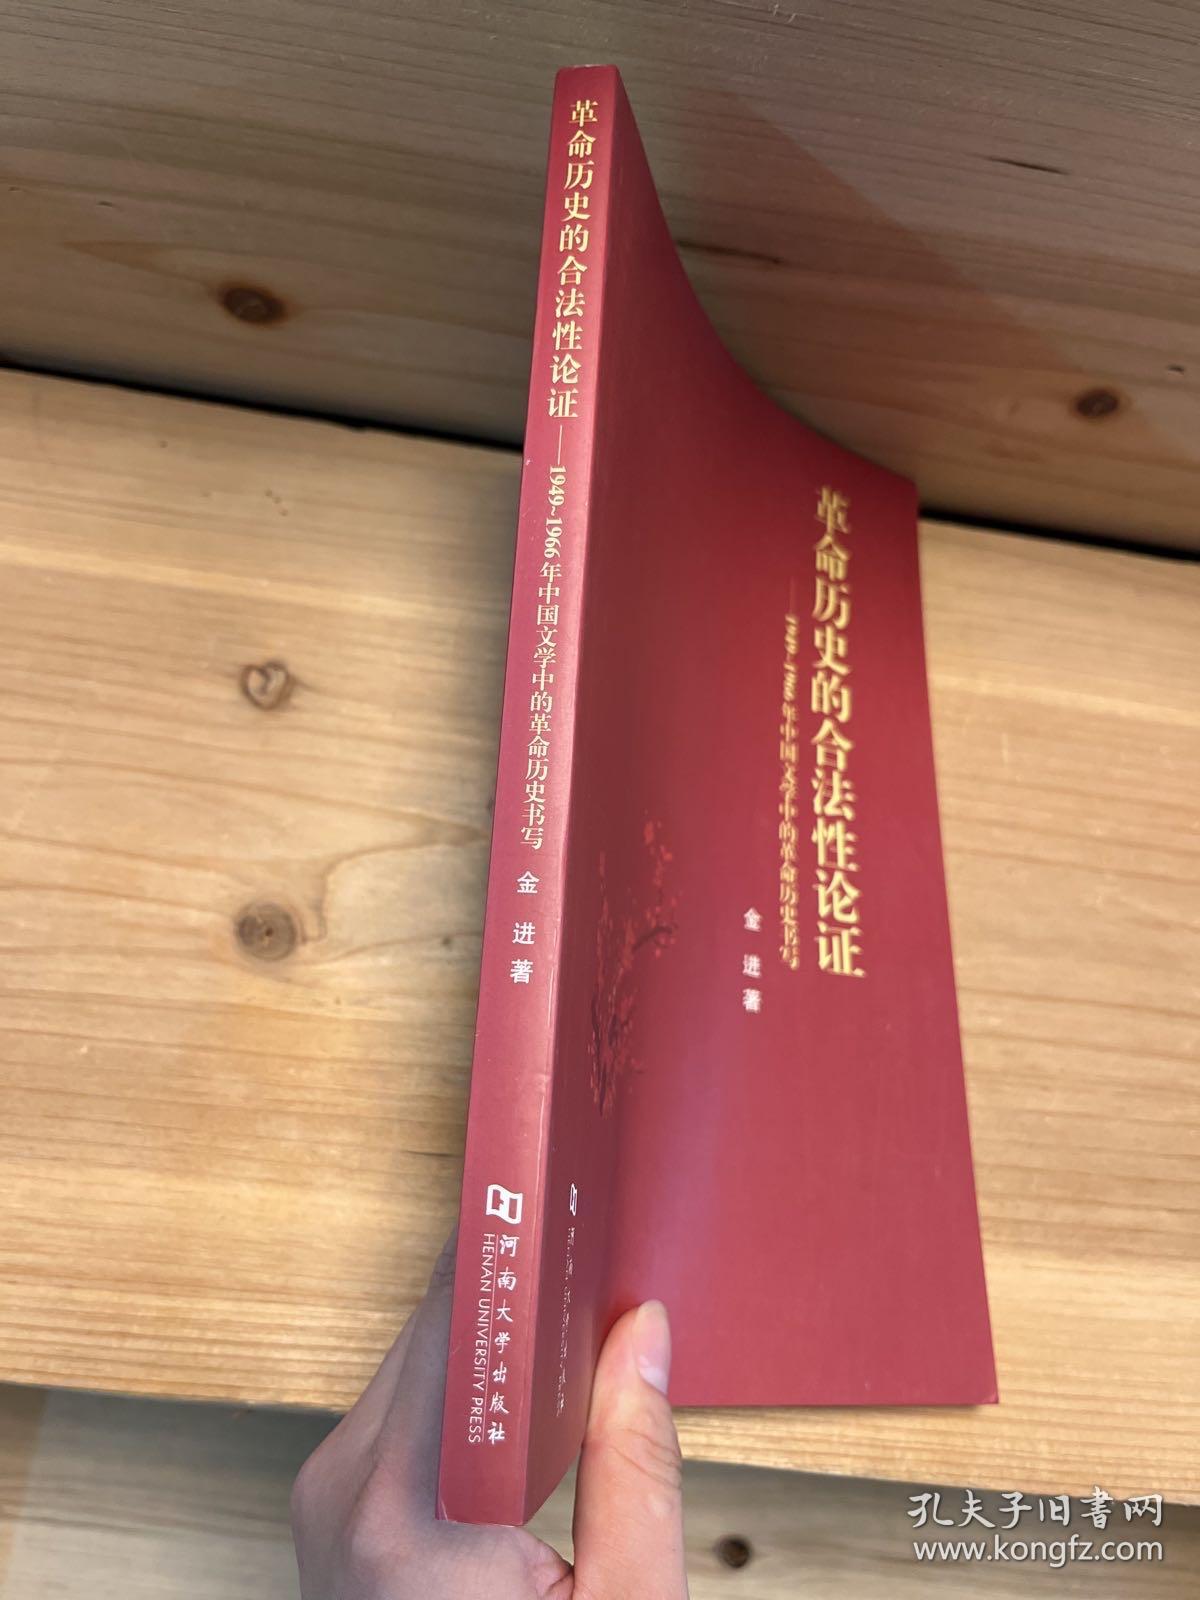 革命历史的合法性论证：1949-1966年中国文学中的革命历史书写